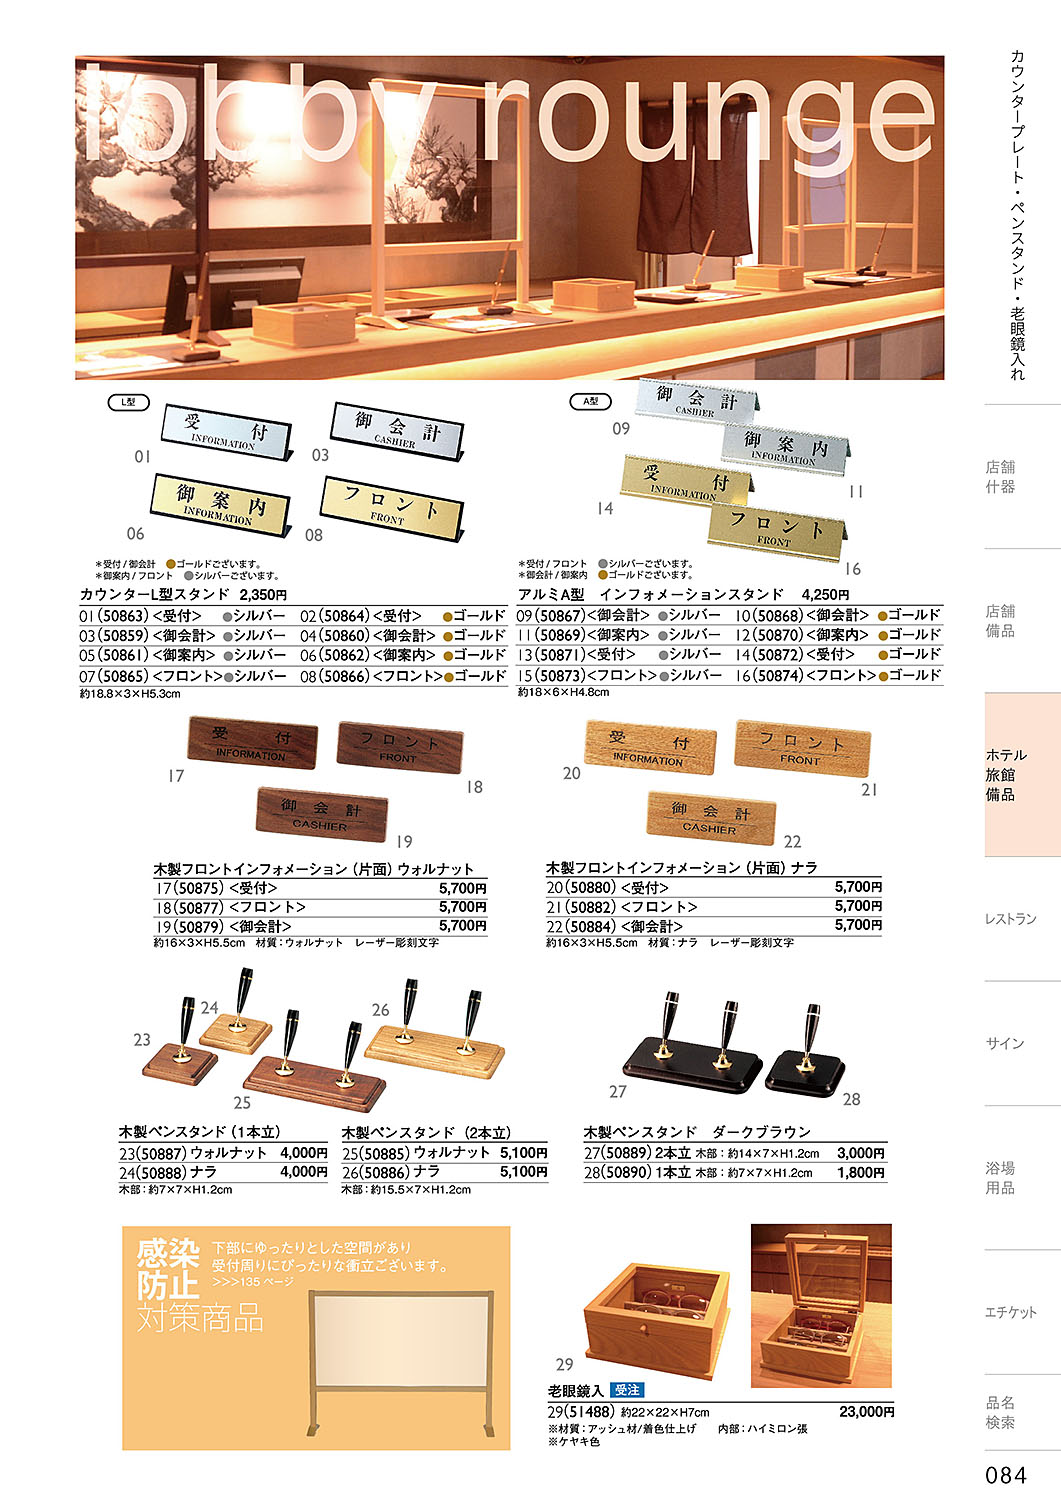 和食器カタログ P.84-ホテル・旅館 備品／カウンタースタンド・木製ペンスタンド・老眼鏡入れ